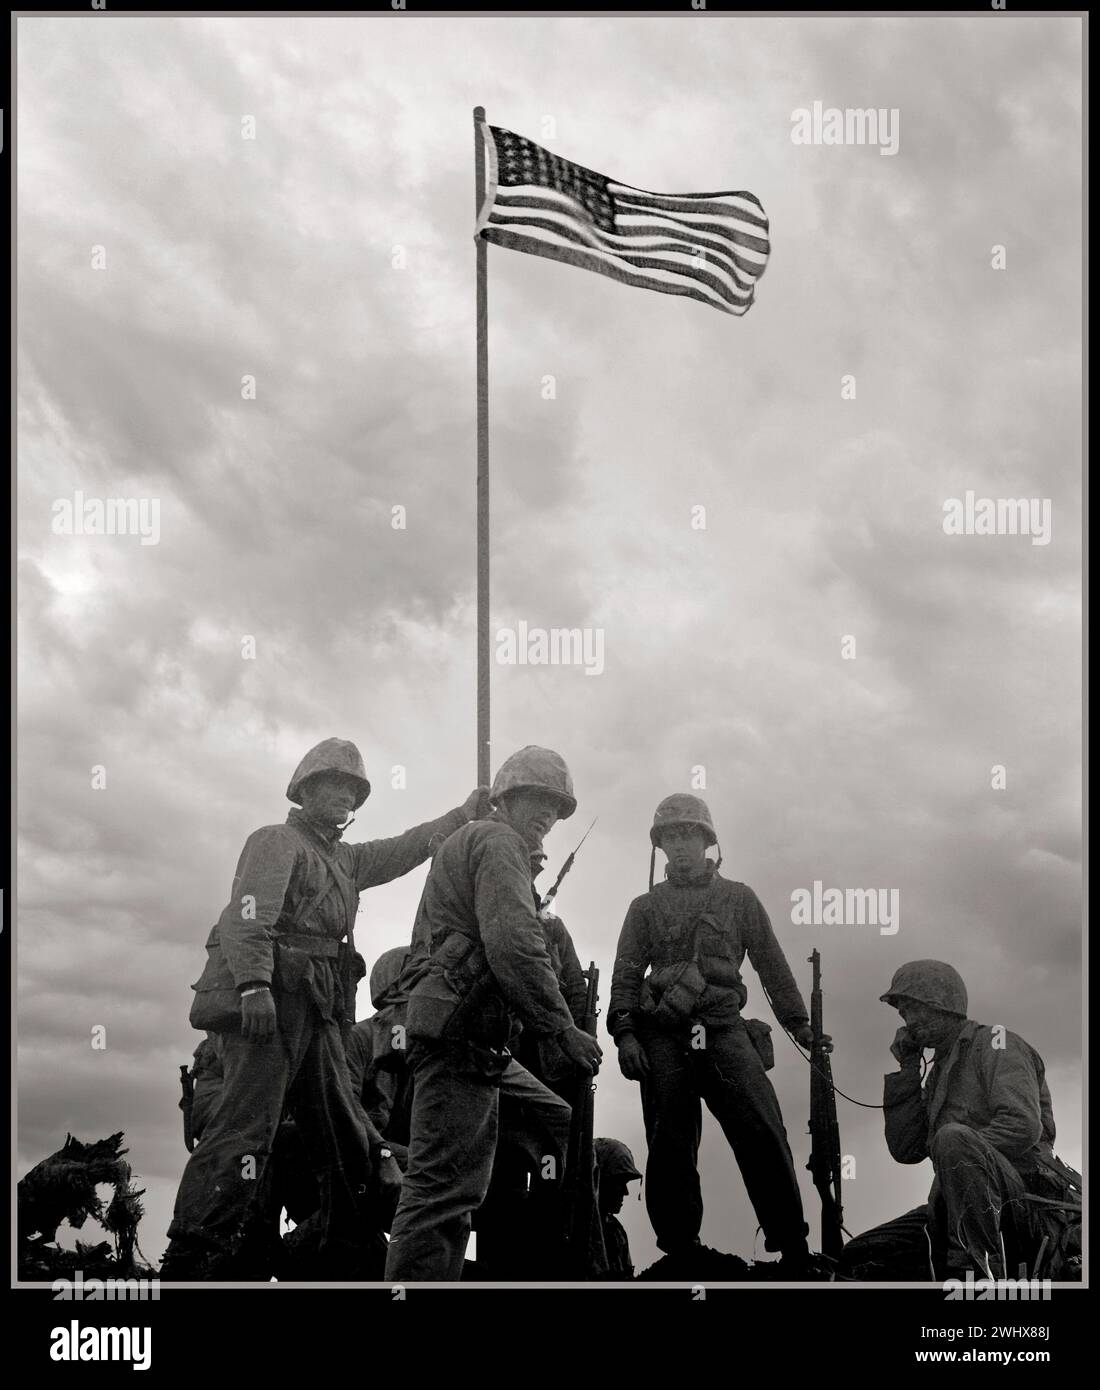 IWO JIMA premier lever de drapeau par les Marines américains février 1945 la bataille d'Iwo Jima est une bataille majeure au cours de laquelle le corps des Marines des États-Unis et la marine des États-Unis débarquent et finissent par capturer l'île d'Iwo Jima de l'armée impériale japonaise pendant la seconde Guerre mondiale Seconde Guerre mondiale Guerre du Pacifique Banque D'Images